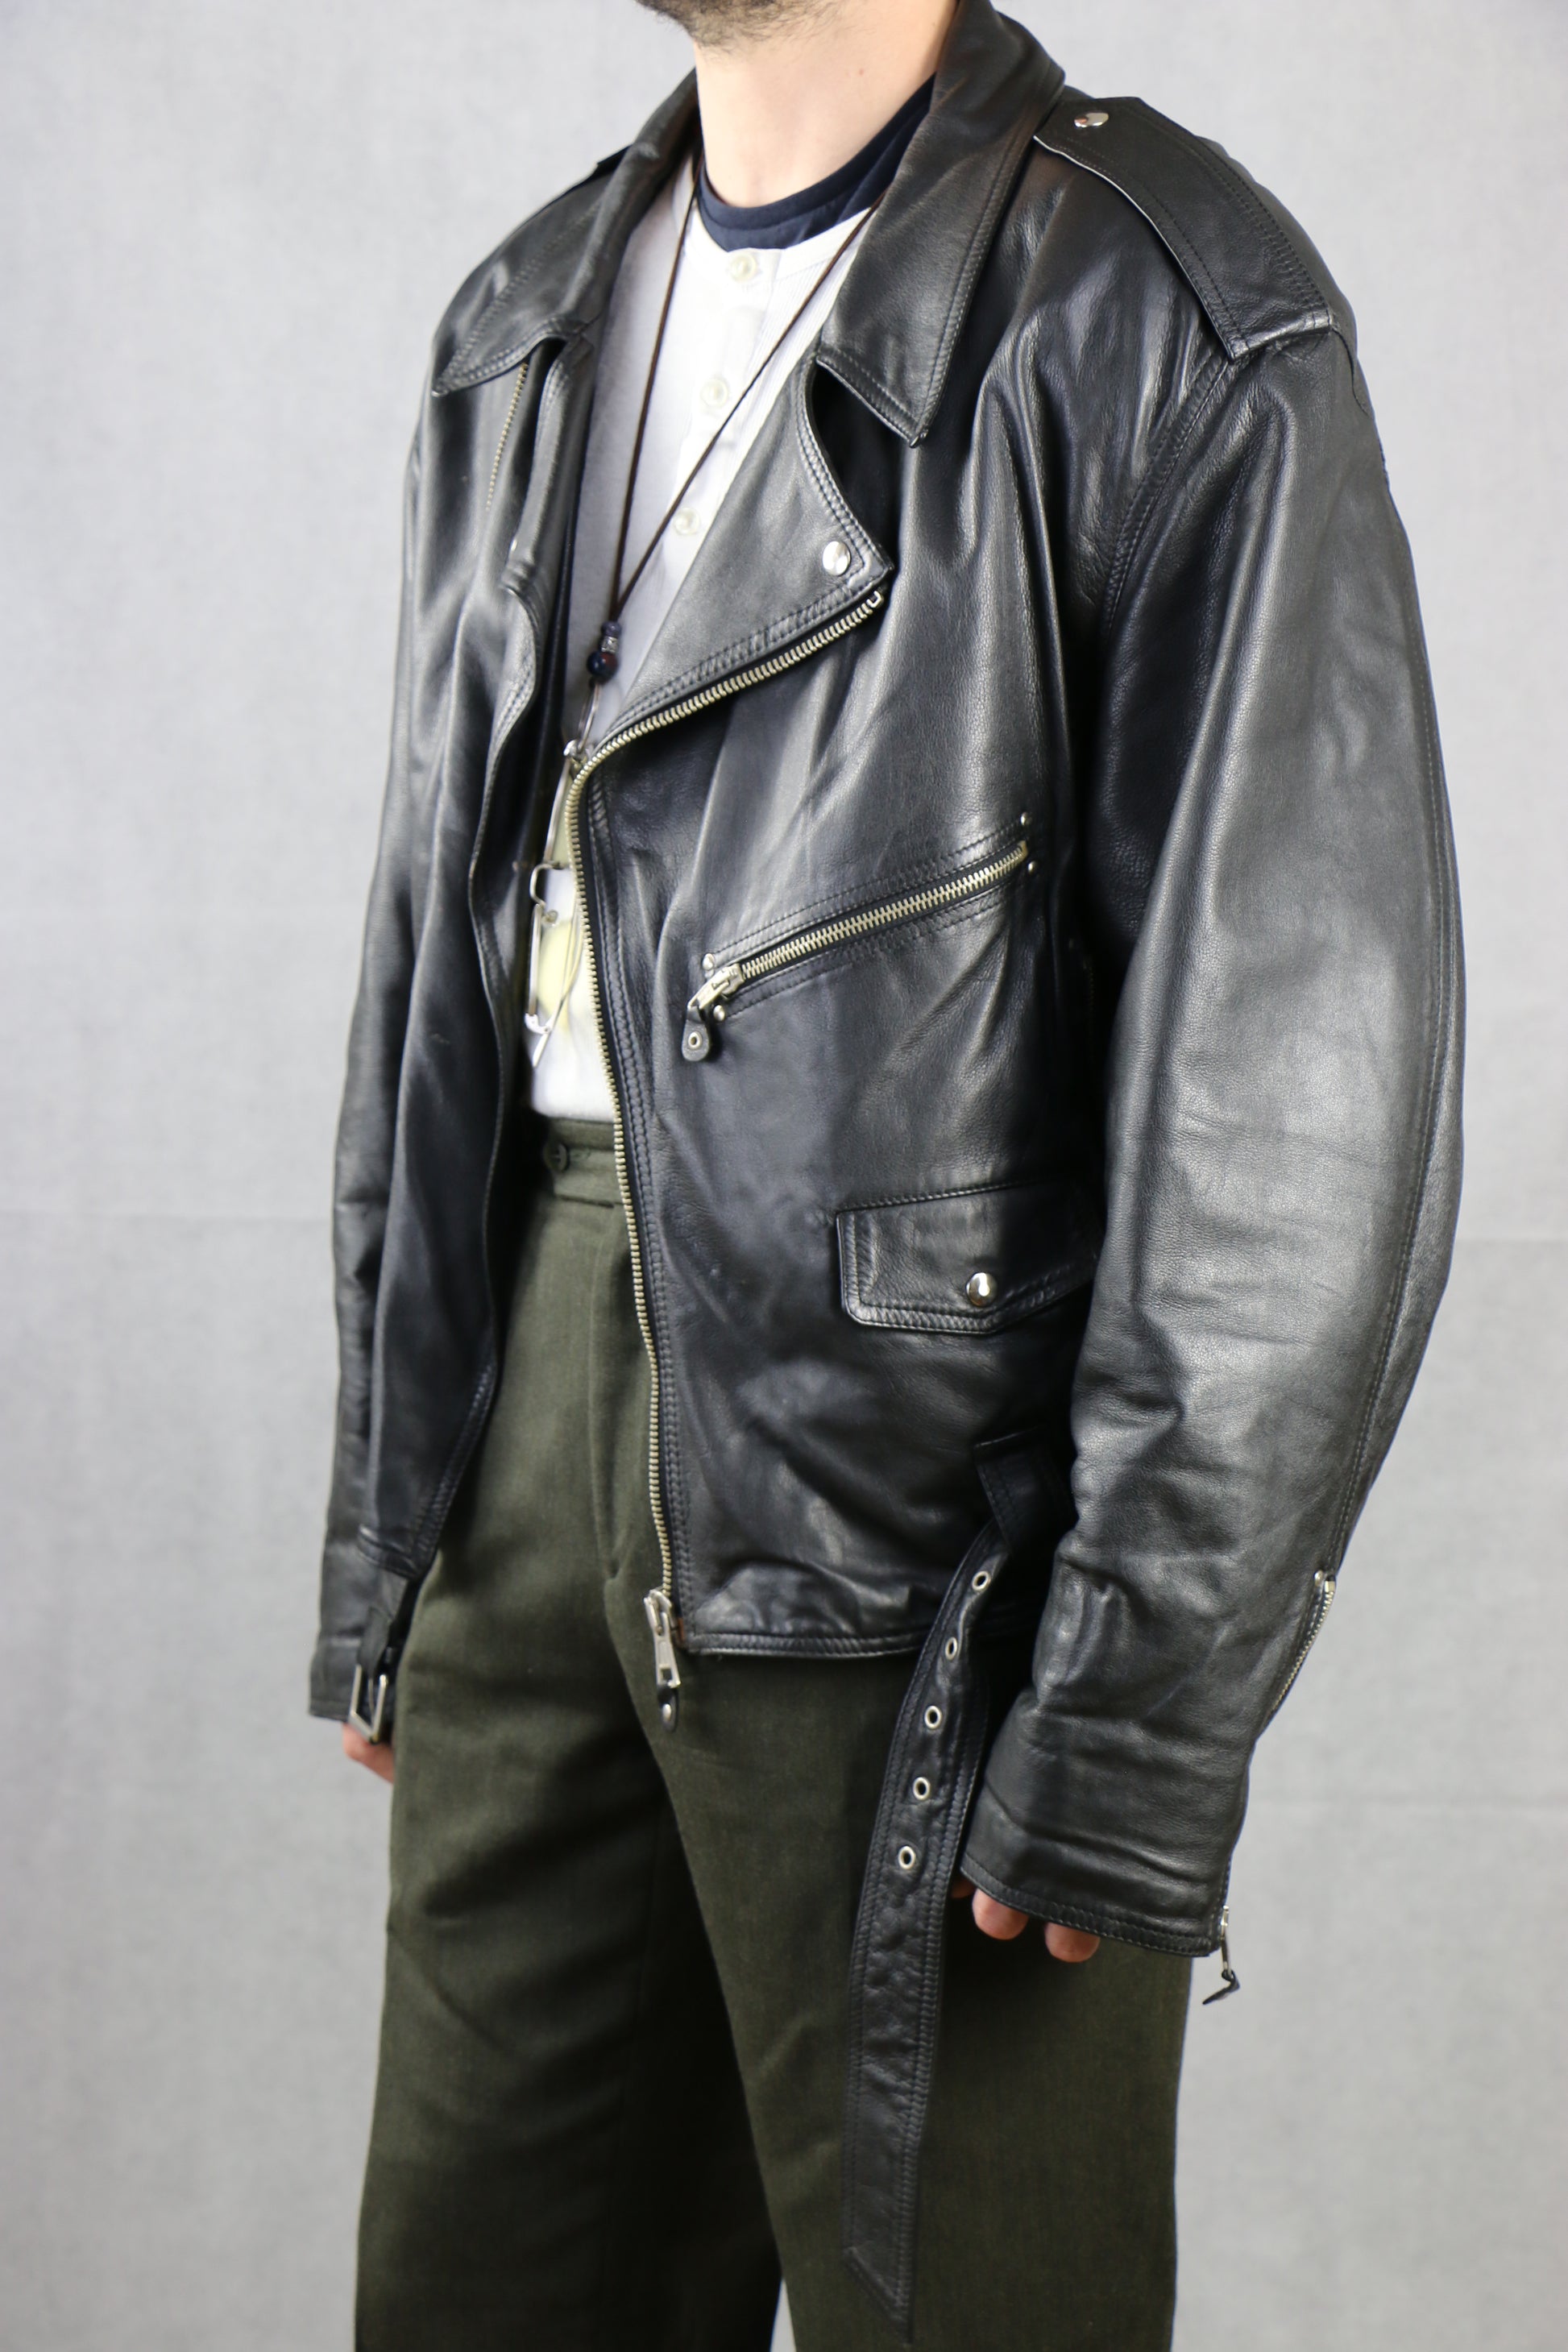 Biker Leather Jacket 'XL' - vintage clothing clochard92.com